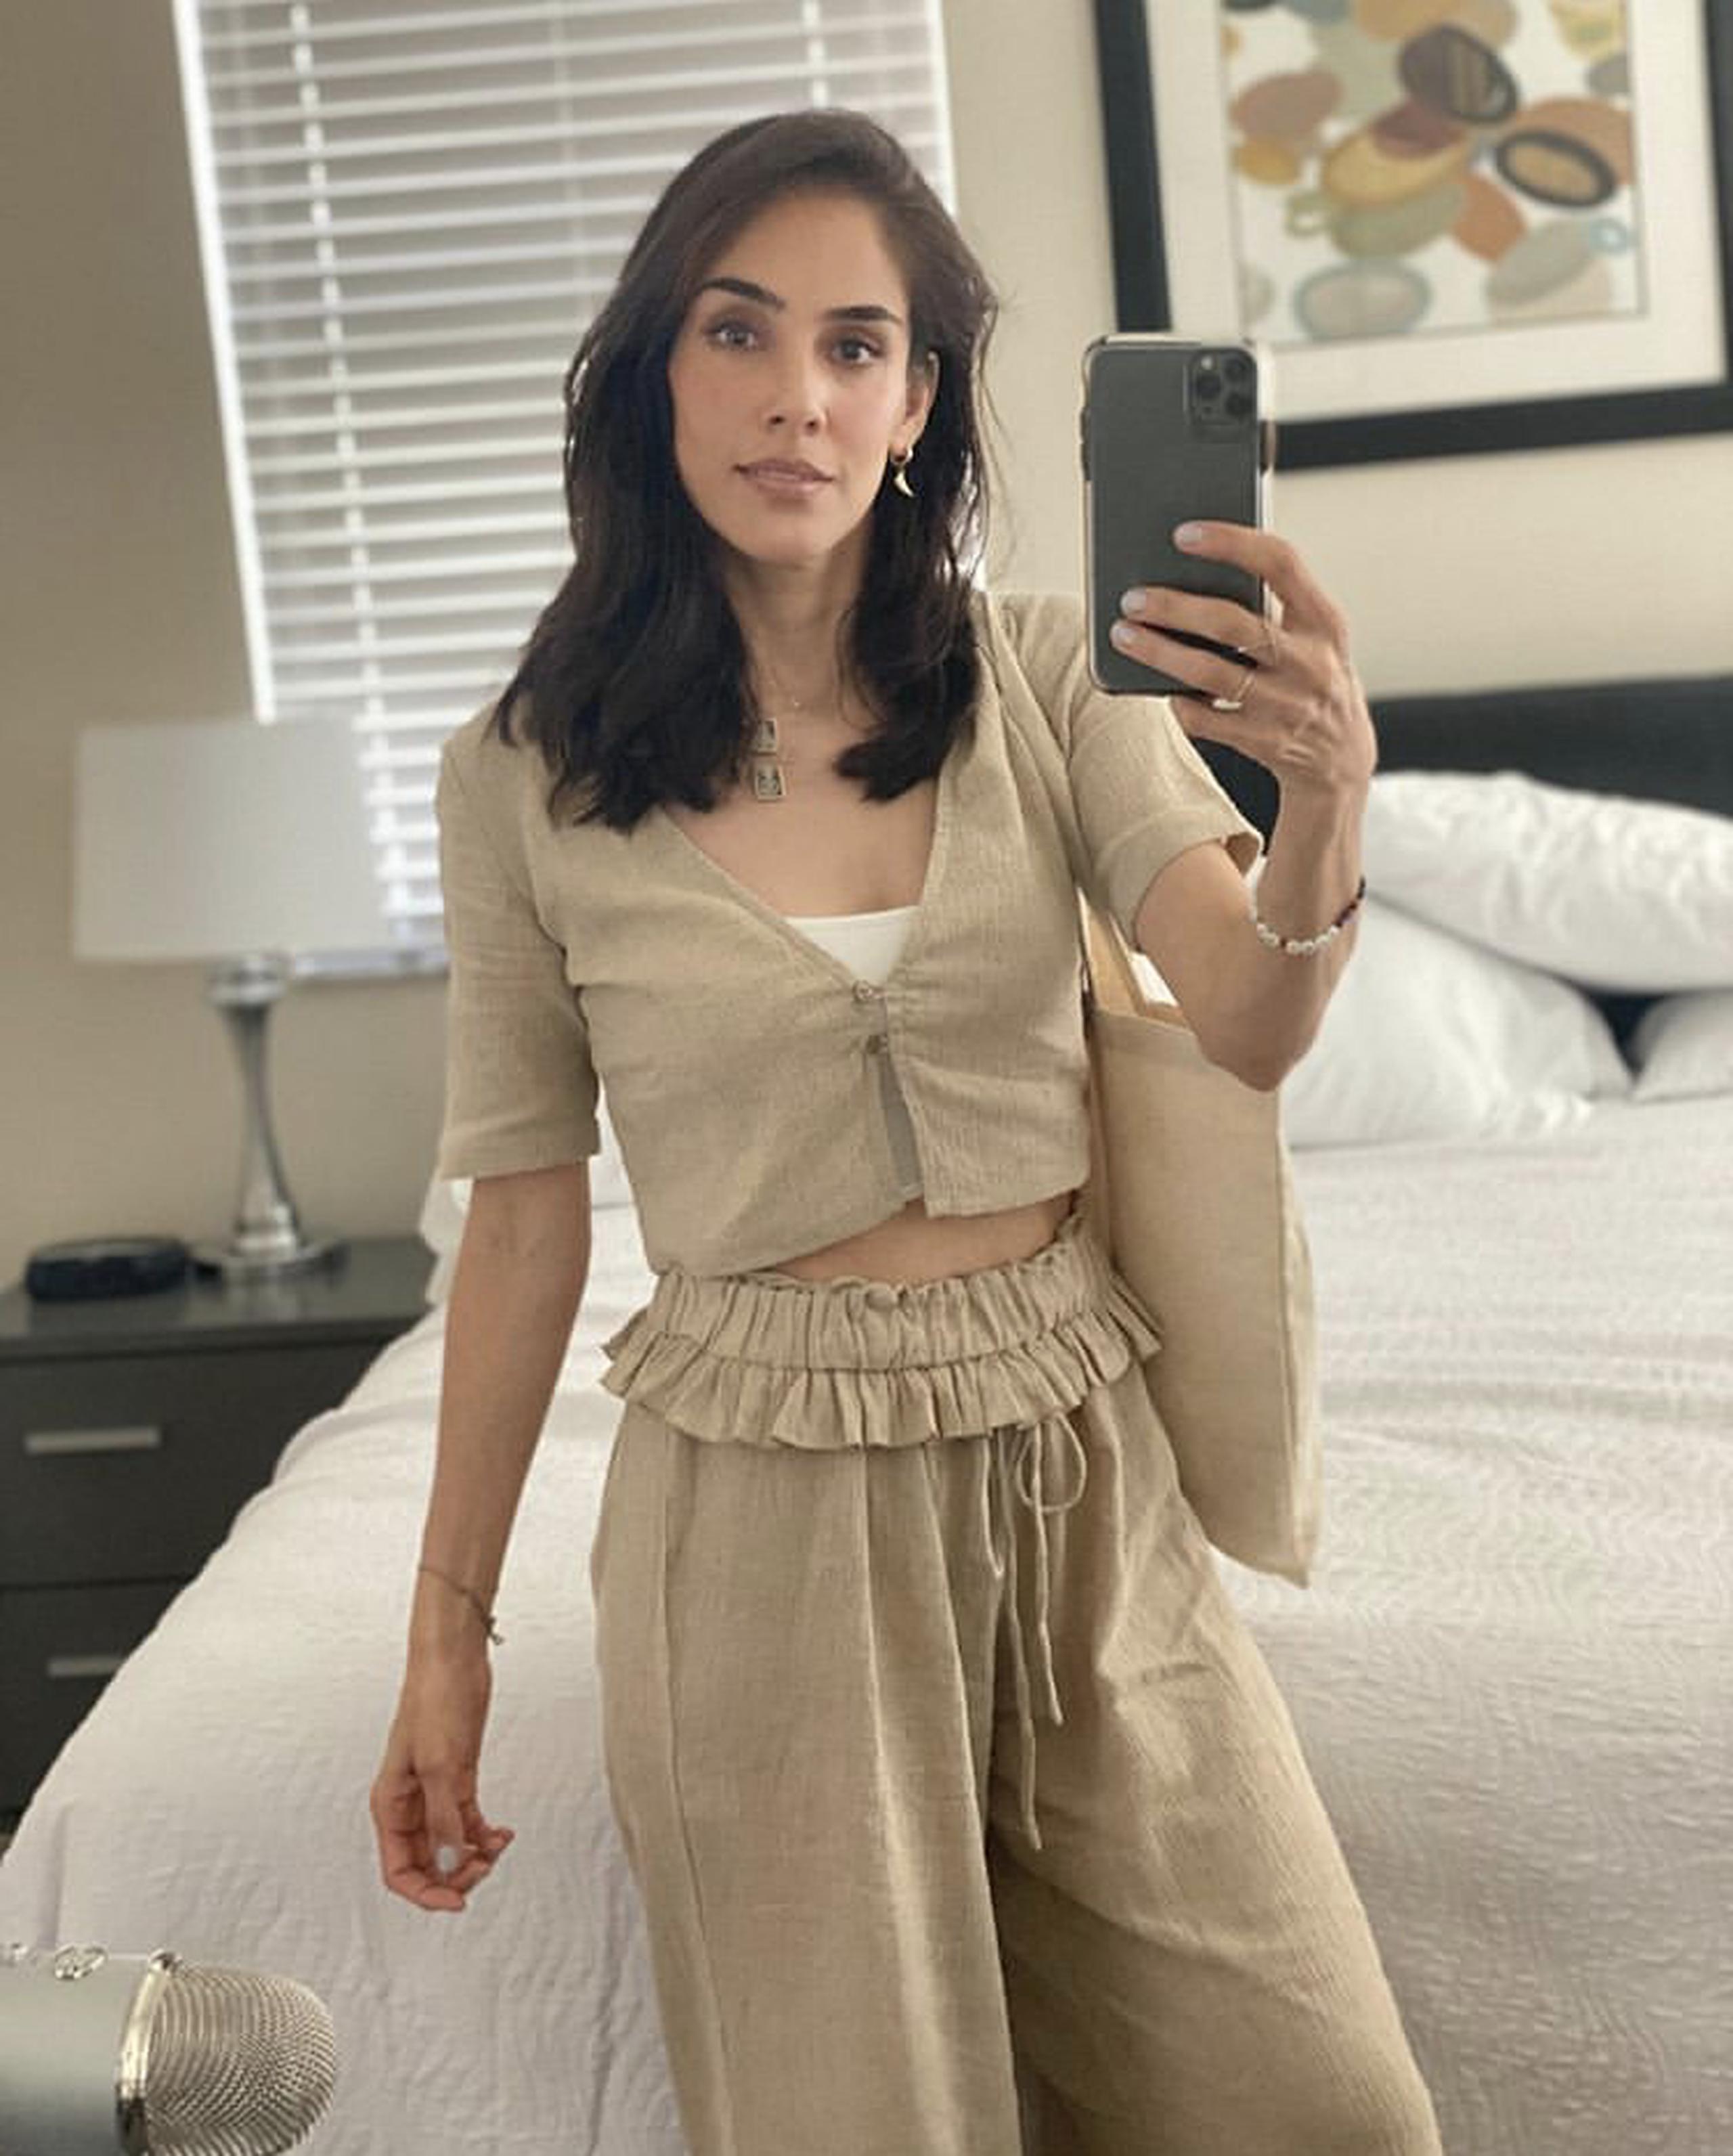 La actriz mexicana presenta síntomas leves, según compartió en su Instagram.